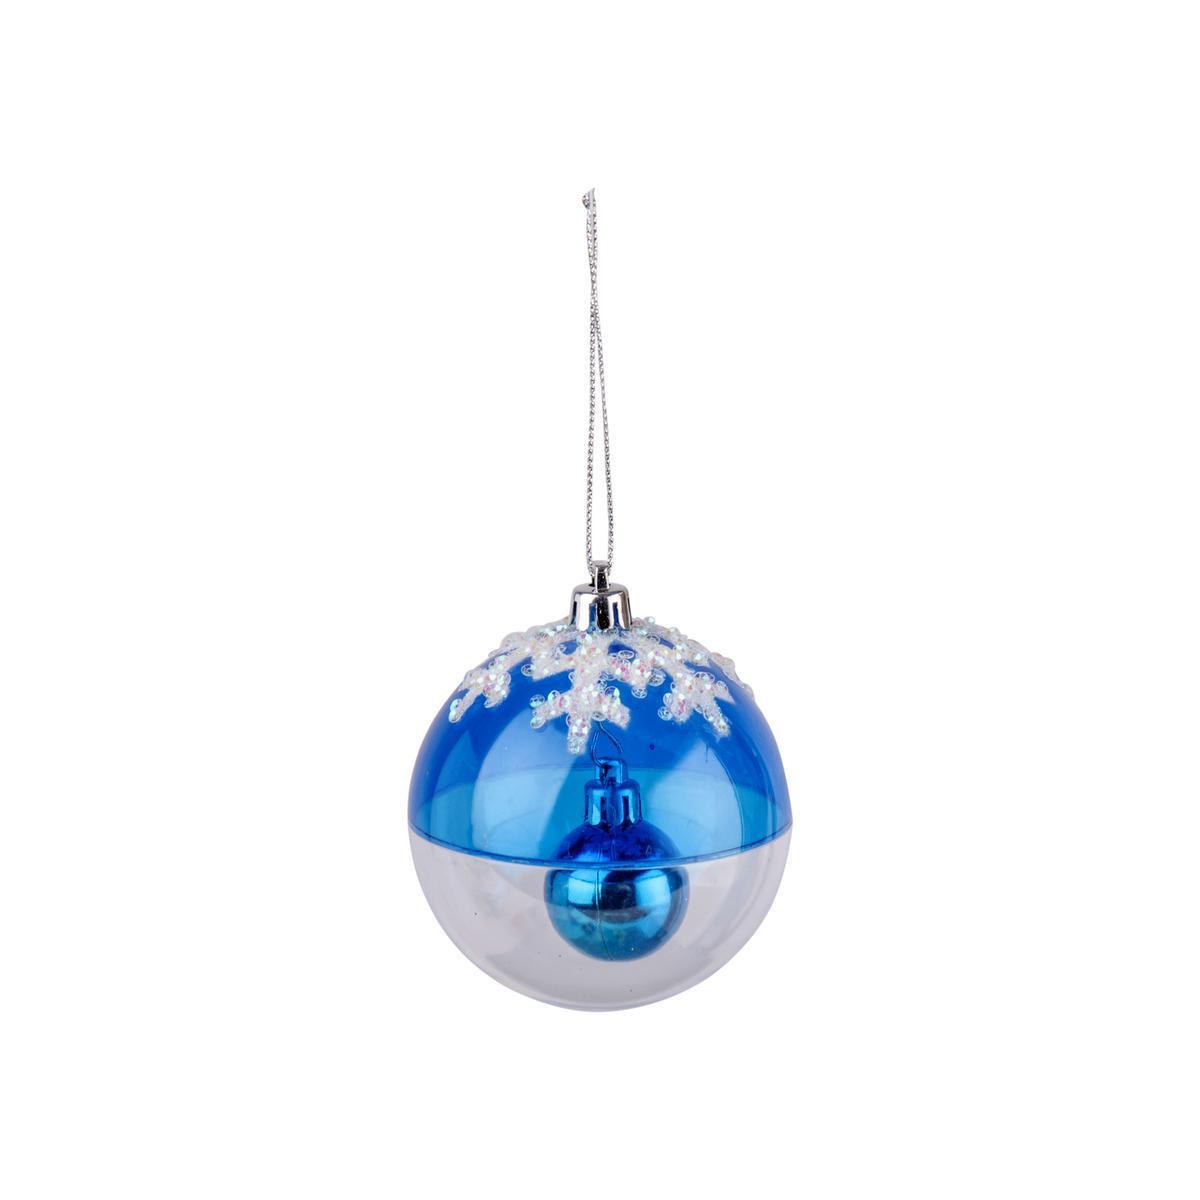 Suspension boule - Plastique - Ø 8 cm - Bleu et transparent